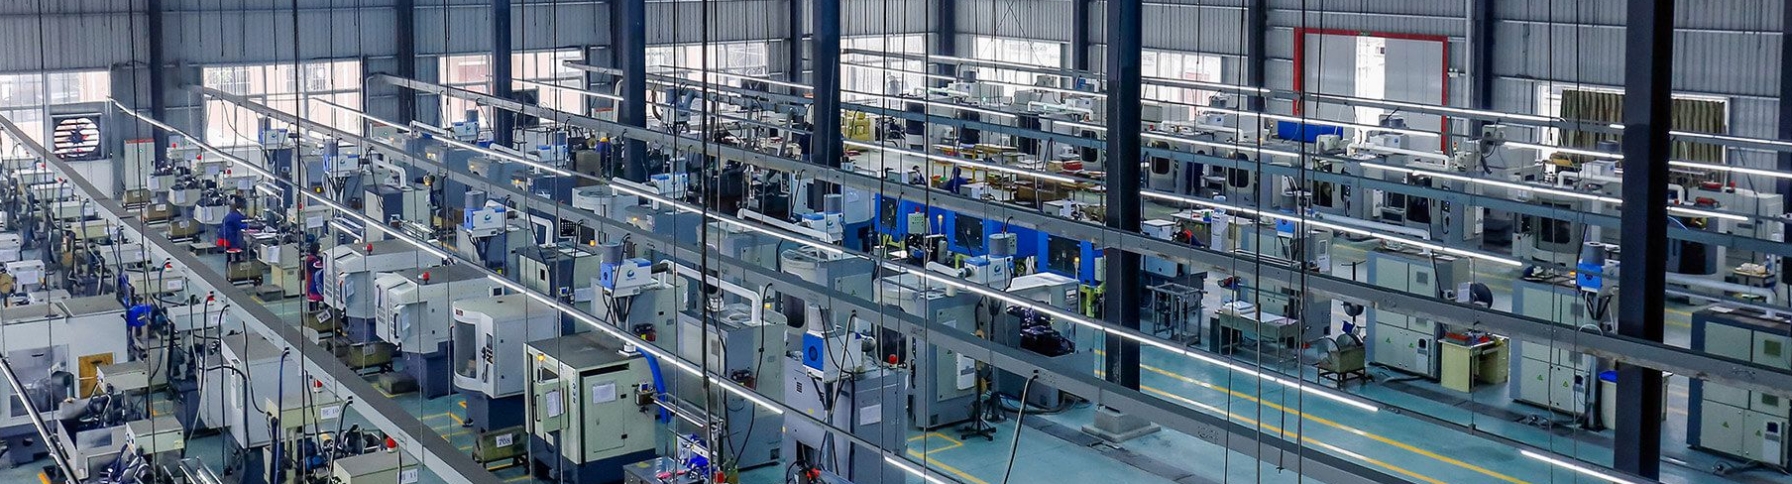 KWS - крупнейший завод по производству деревообрабатывающего режущего инструмента в Китае